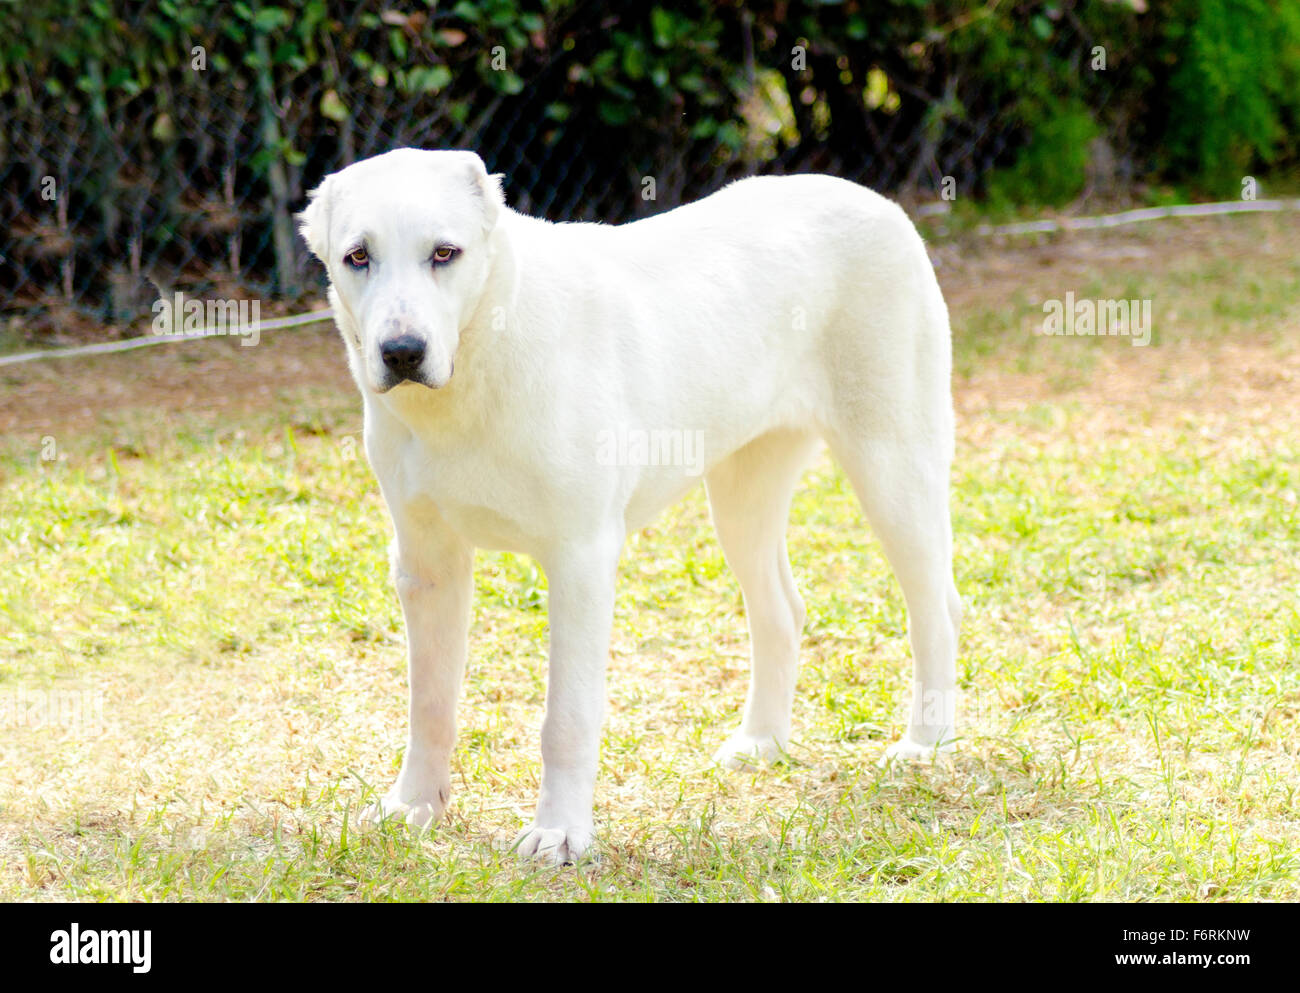 Eine junge schöne weiße zentraler Asiatischer Schäferhund stehend auf dem  Rasen. Der zentrale asiatische Owtscharka ist ein großer, robuster Hund,  usu Stockfotografie - Alamy